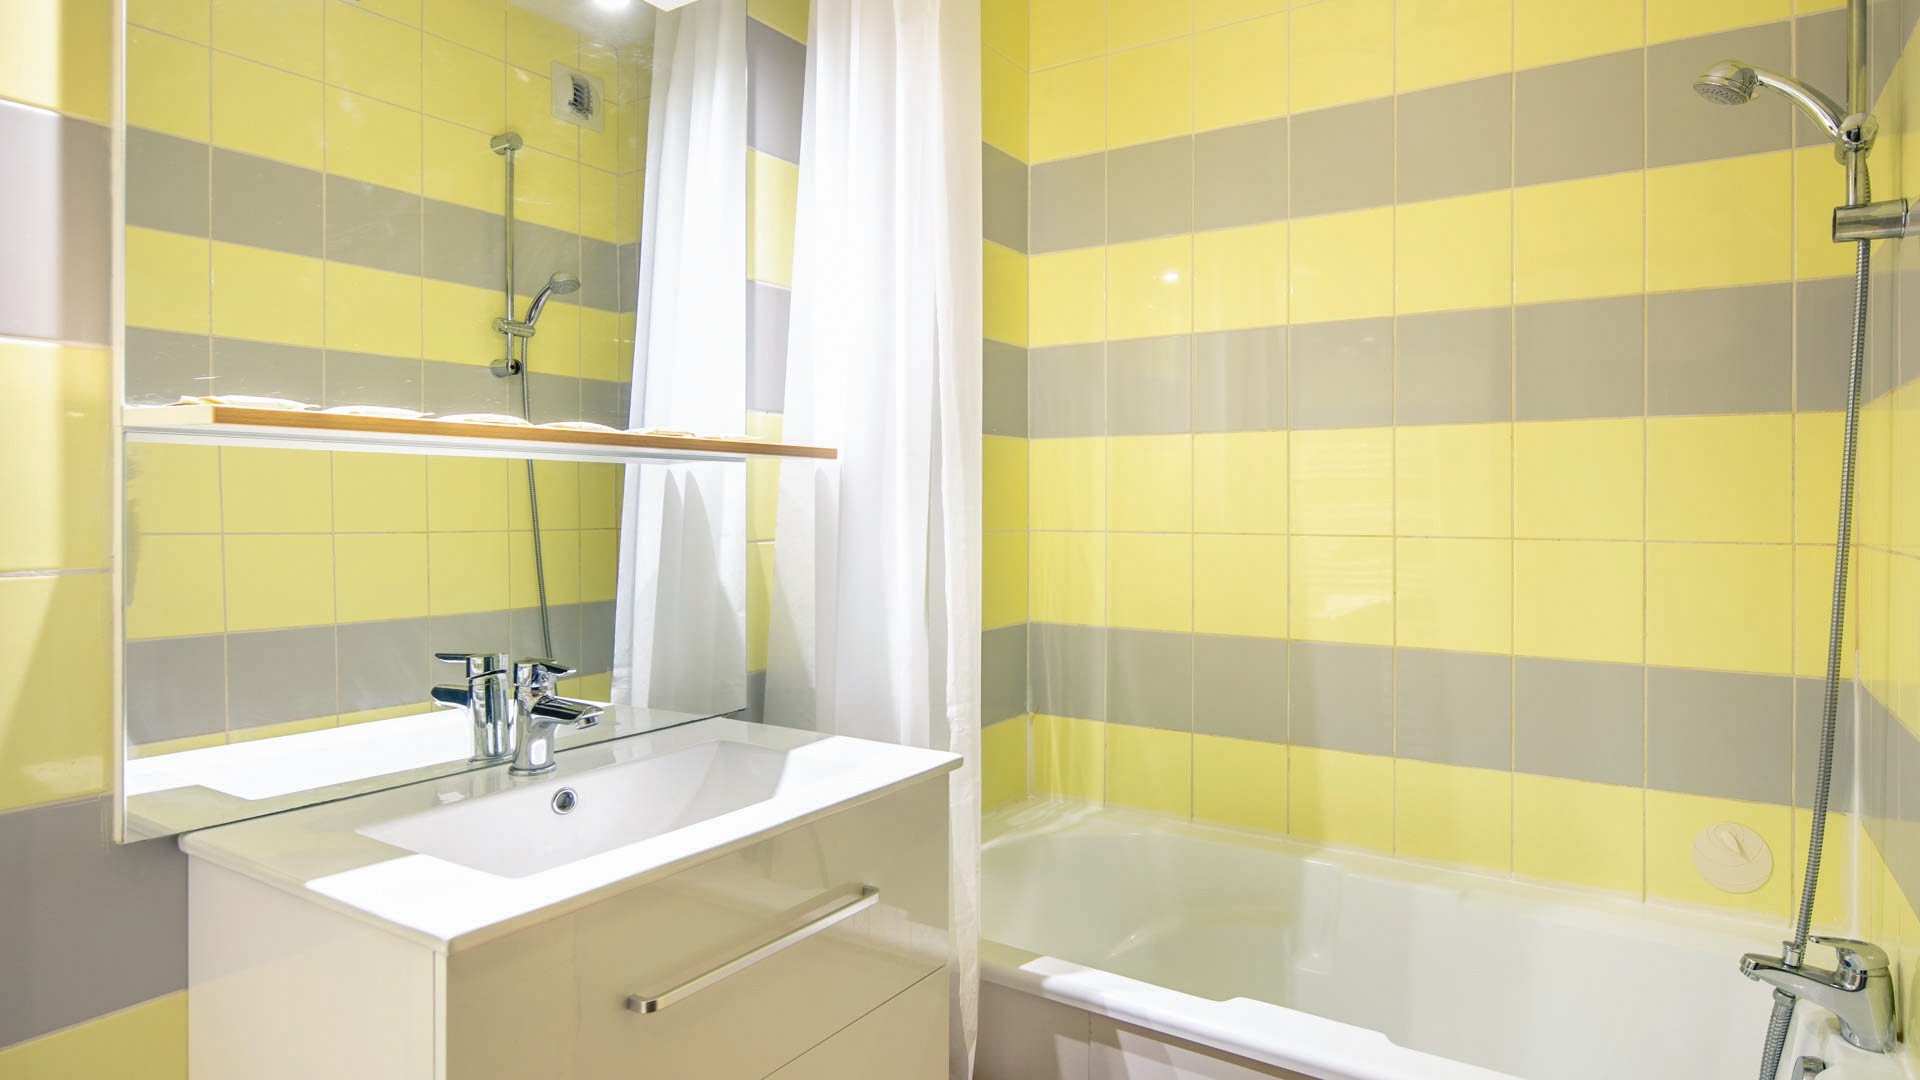 L'Edelweiss in Les 2 Alpes - Appartement für 6 Personen: Badezimmer (Beispiel)